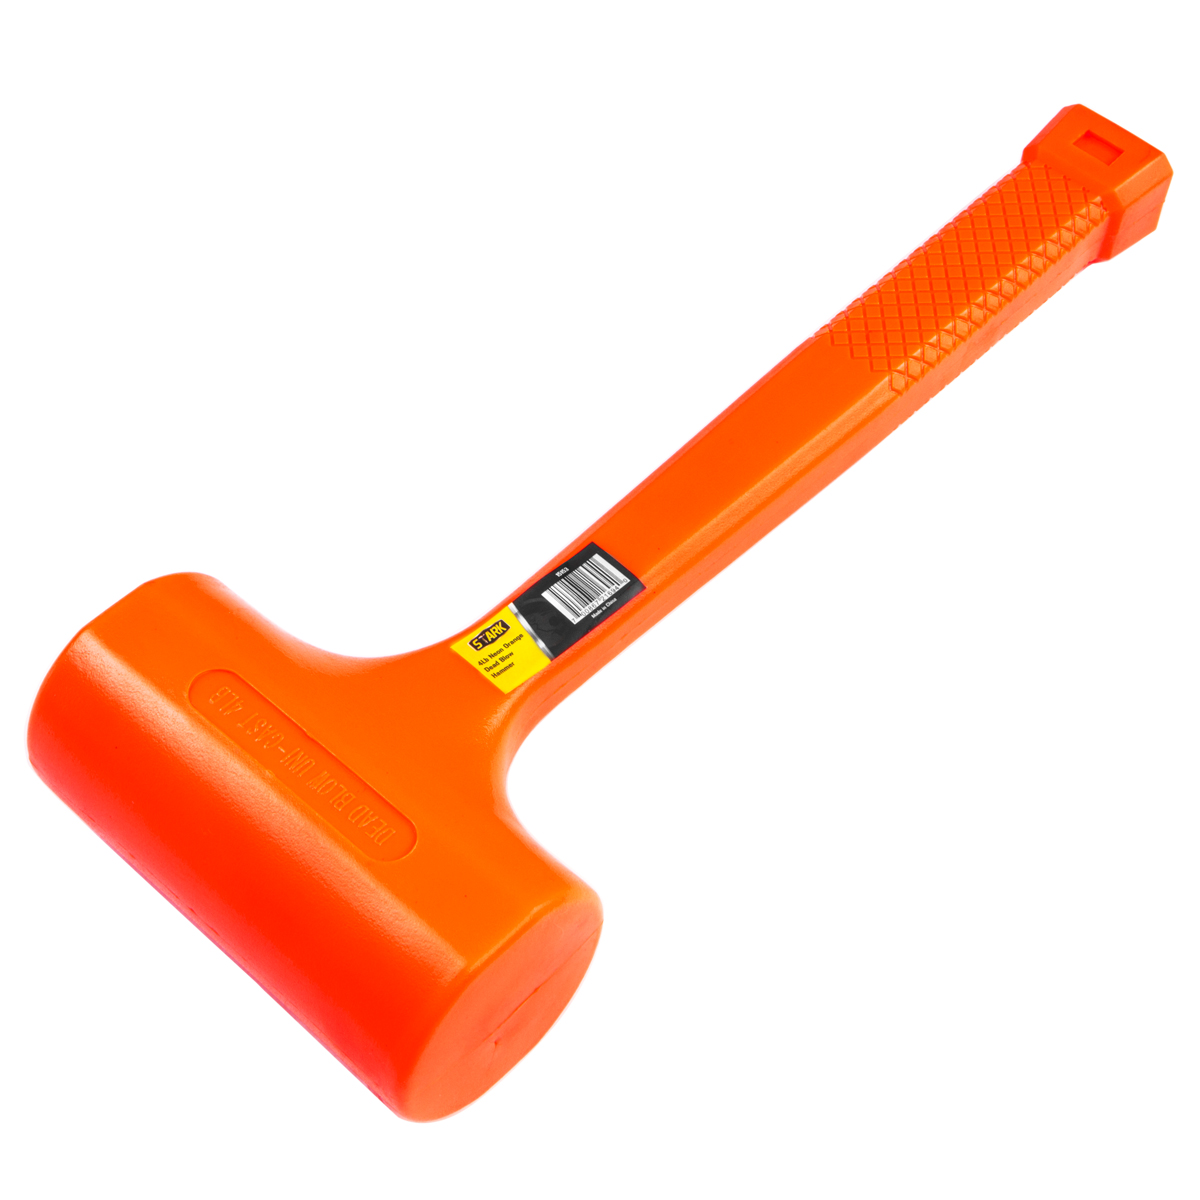 Pound Dead Blow Hammer Non-Slip Handle Hammer with 4lbs Head, Orange 